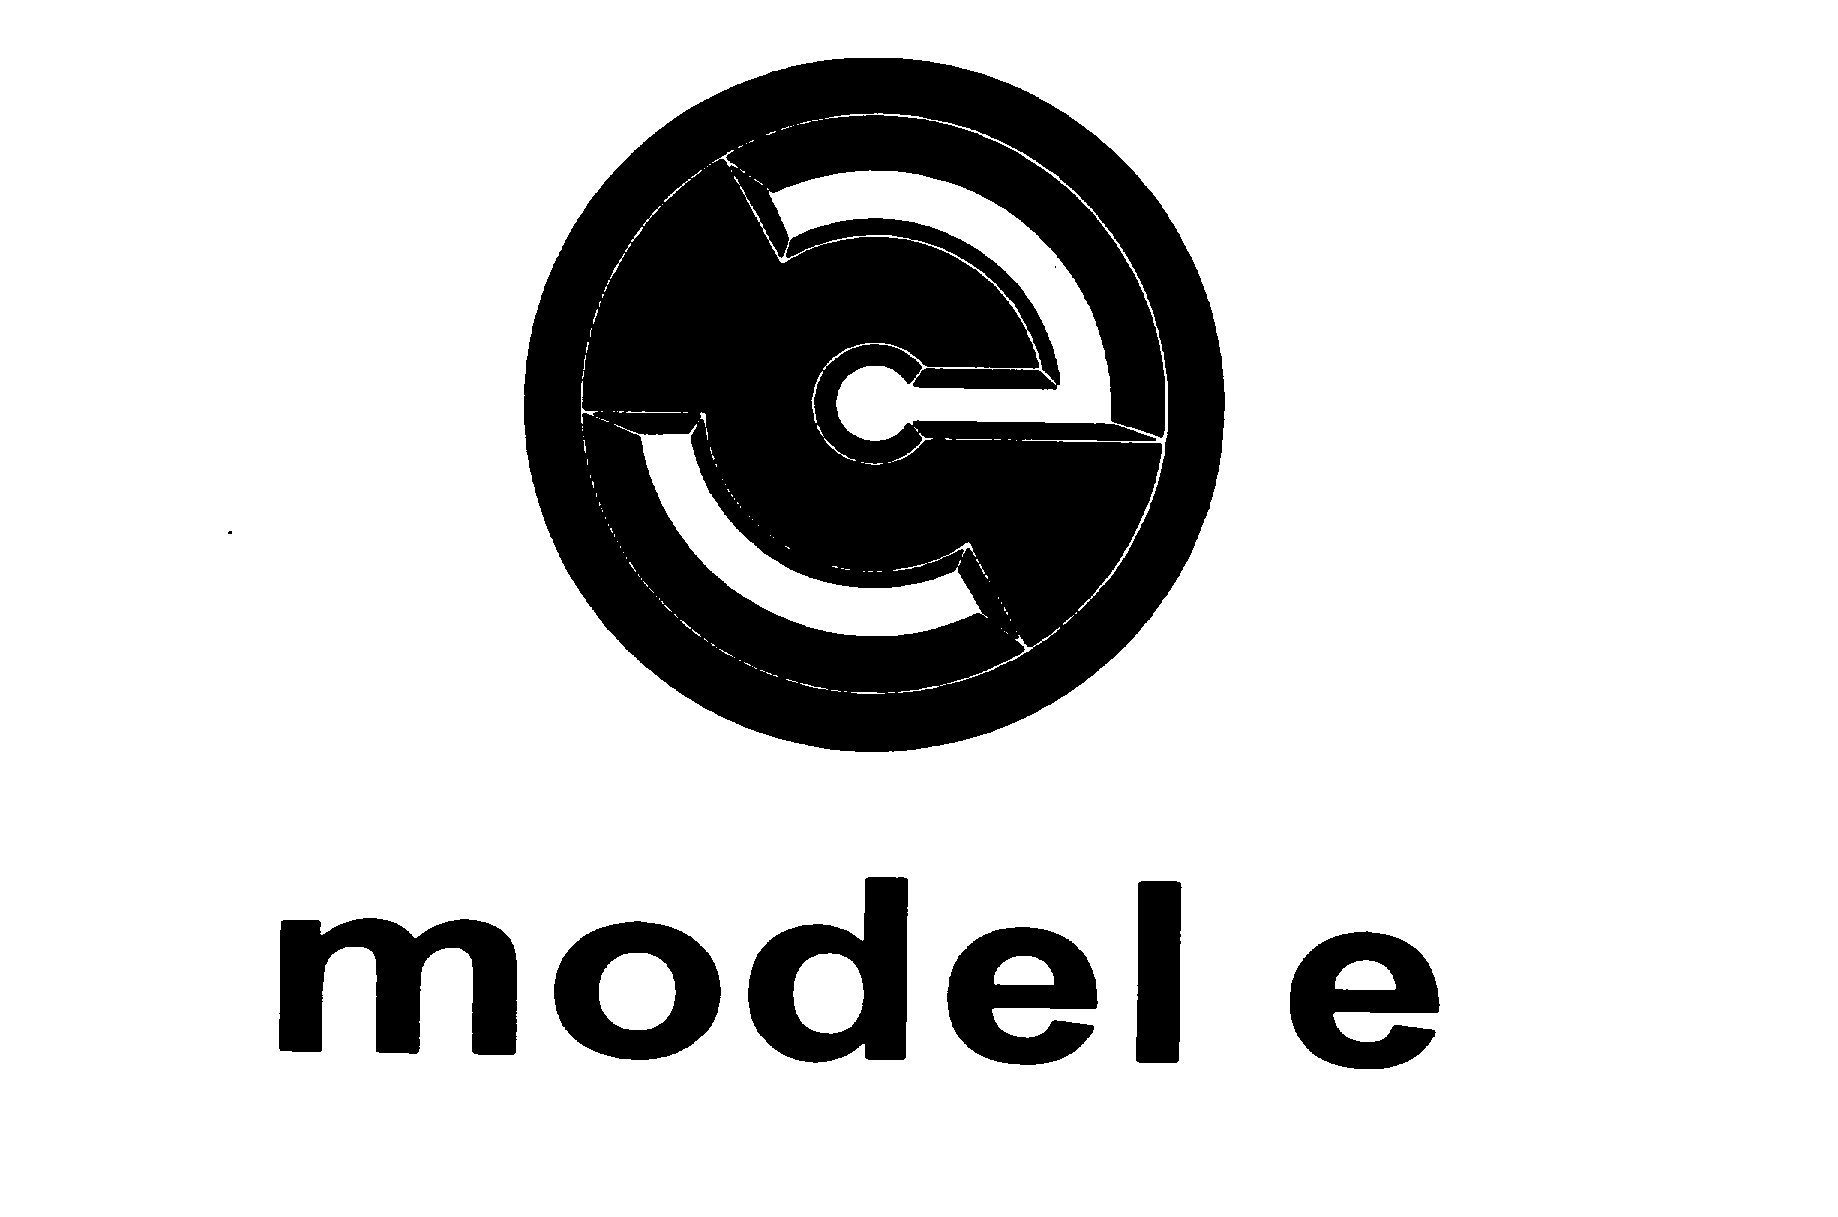 Trademark Logo MODEL E